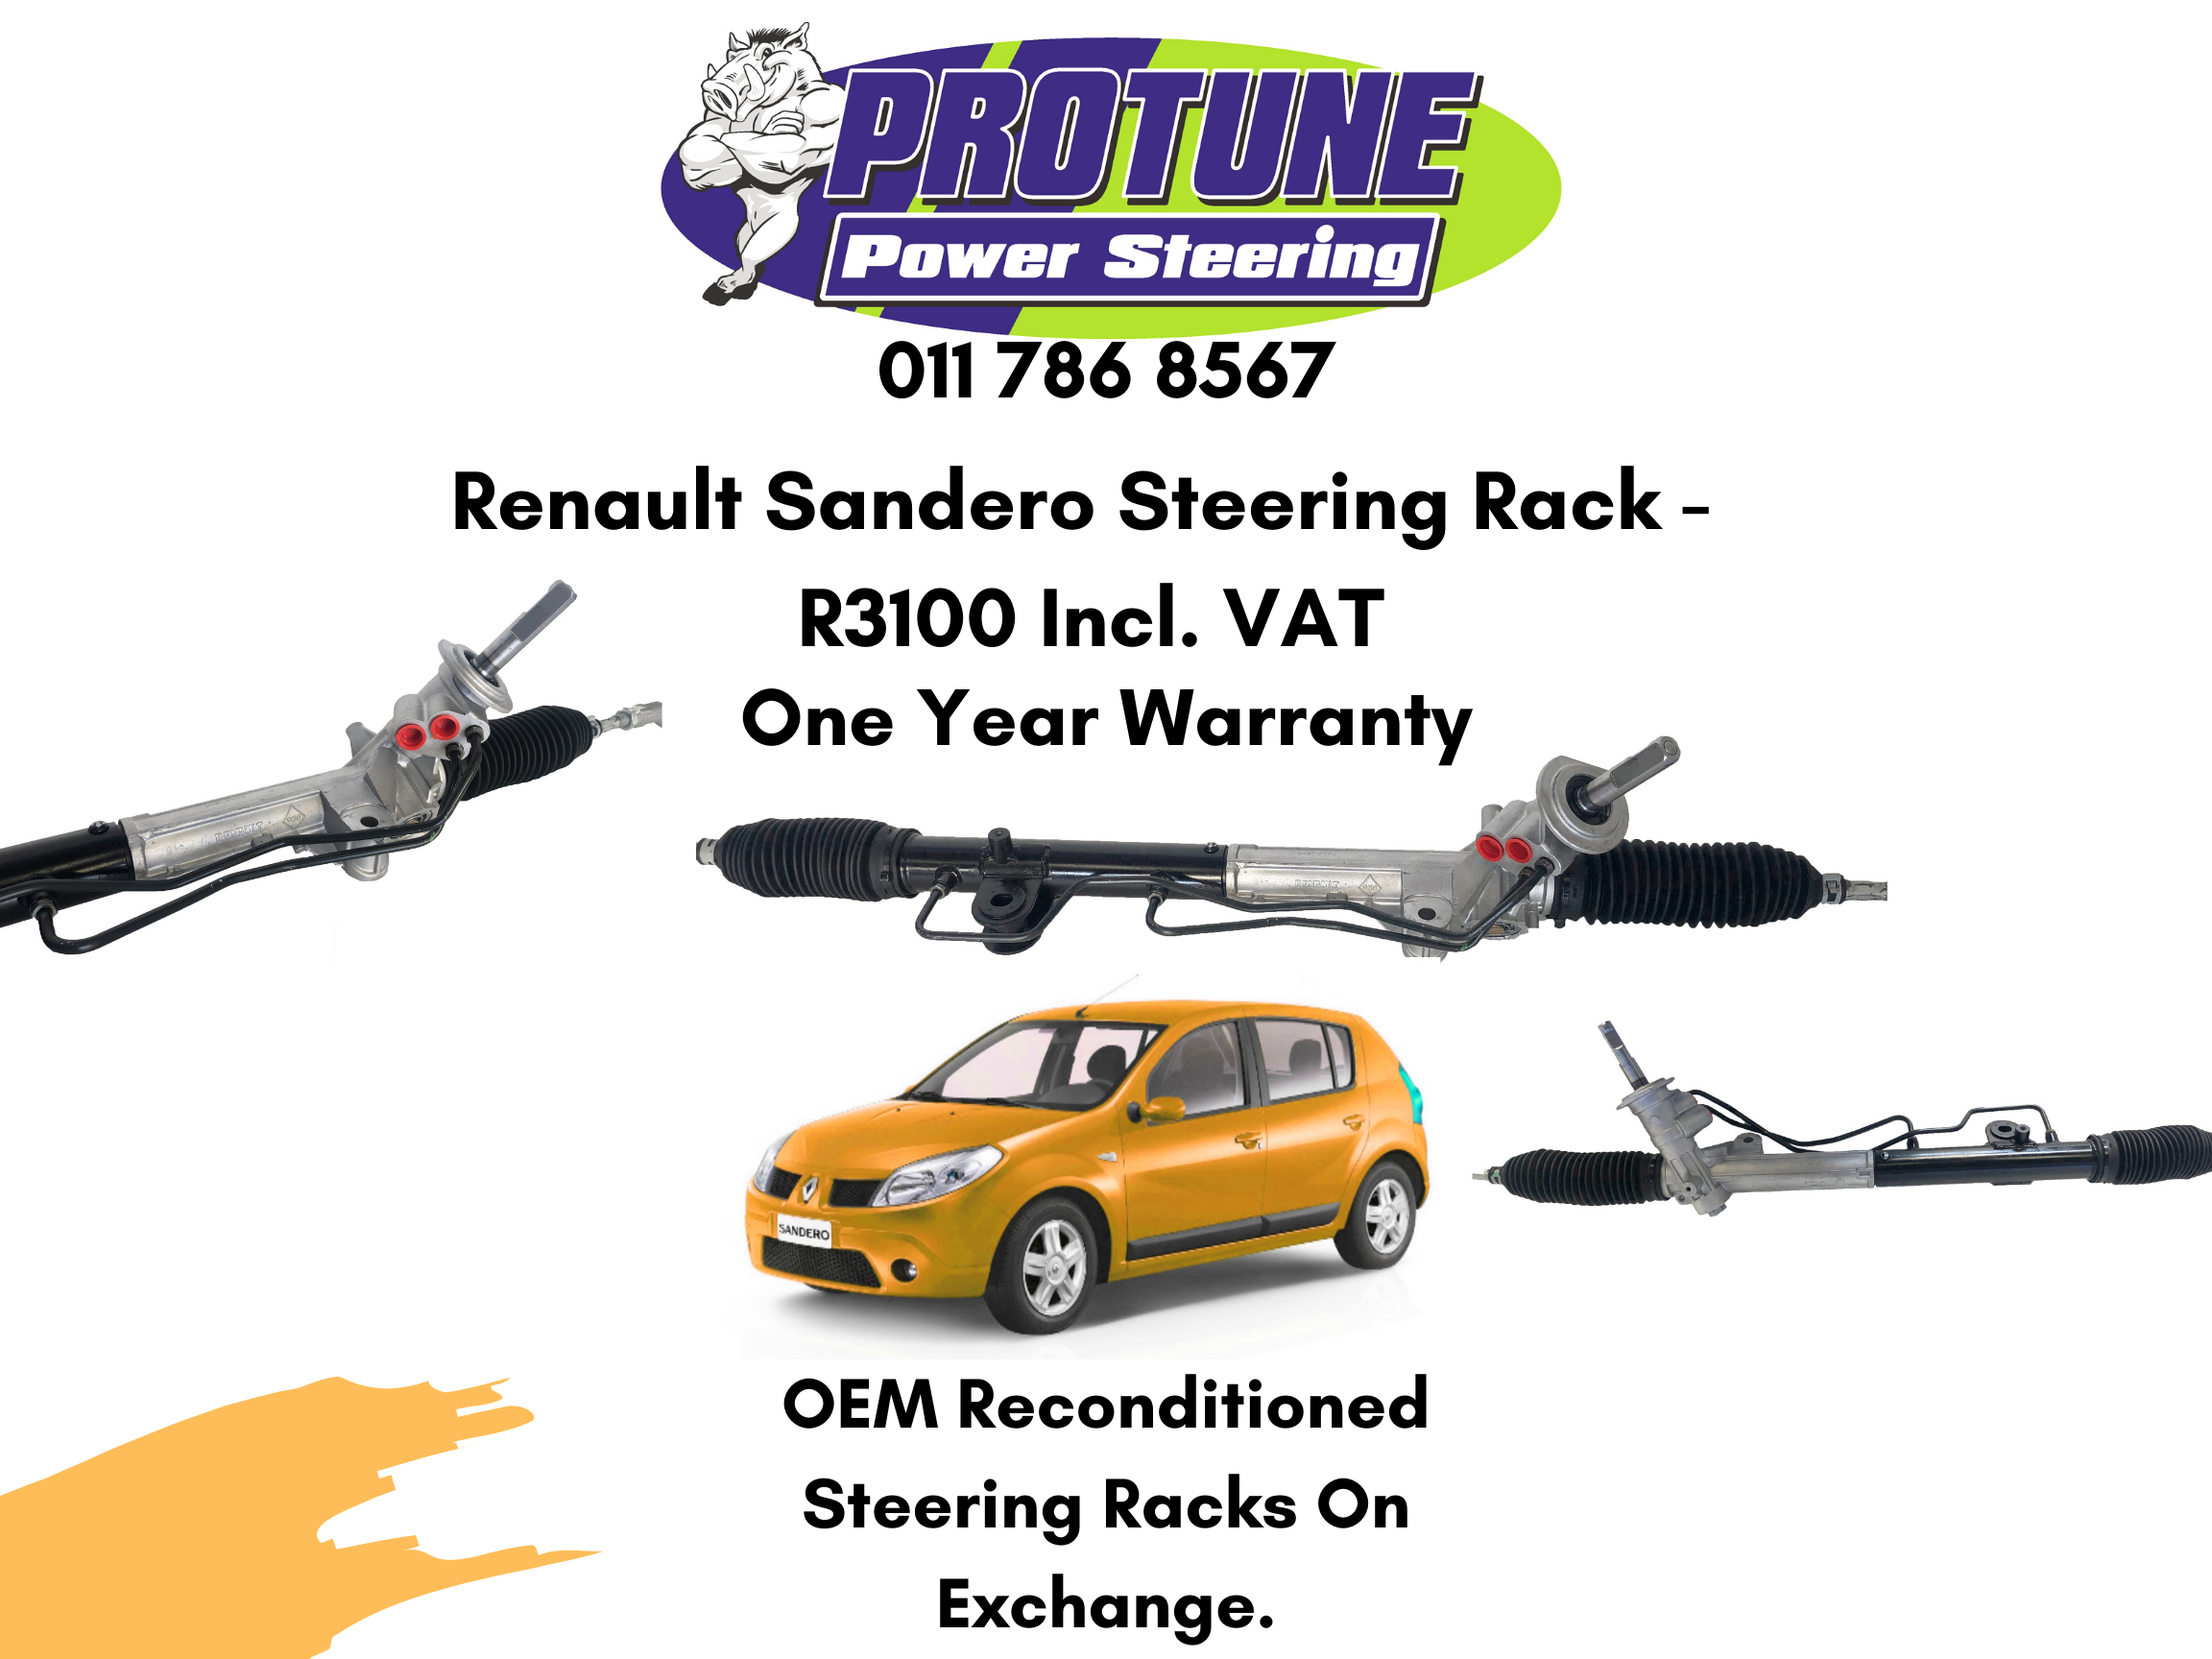 Renault Sandero – OEM Reconditioned Steering Racks